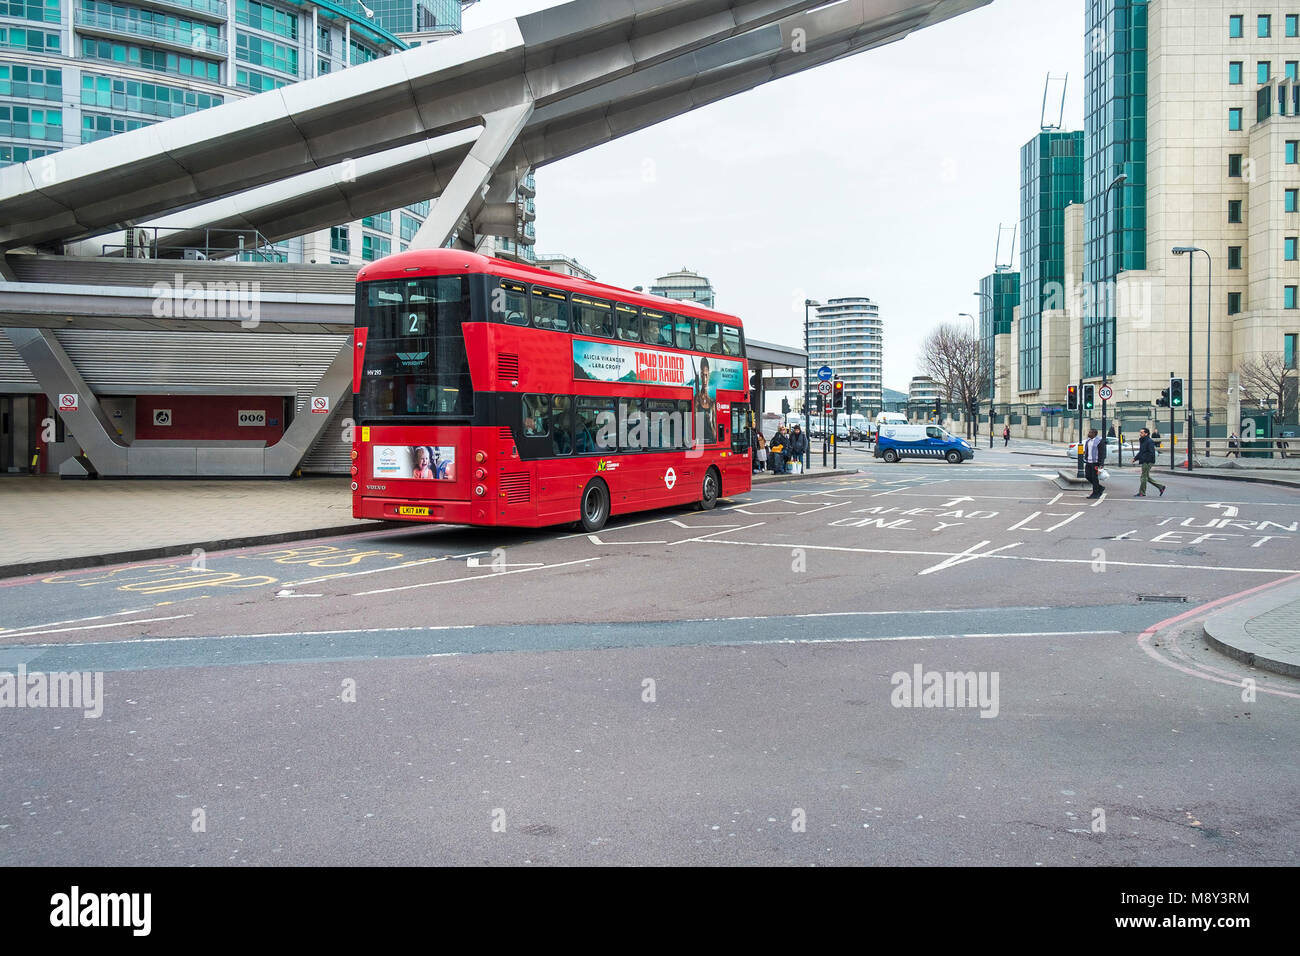 L'emblématique London bus rouge à Vauxhall Cross dans Lambeth Londres. Banque D'Images